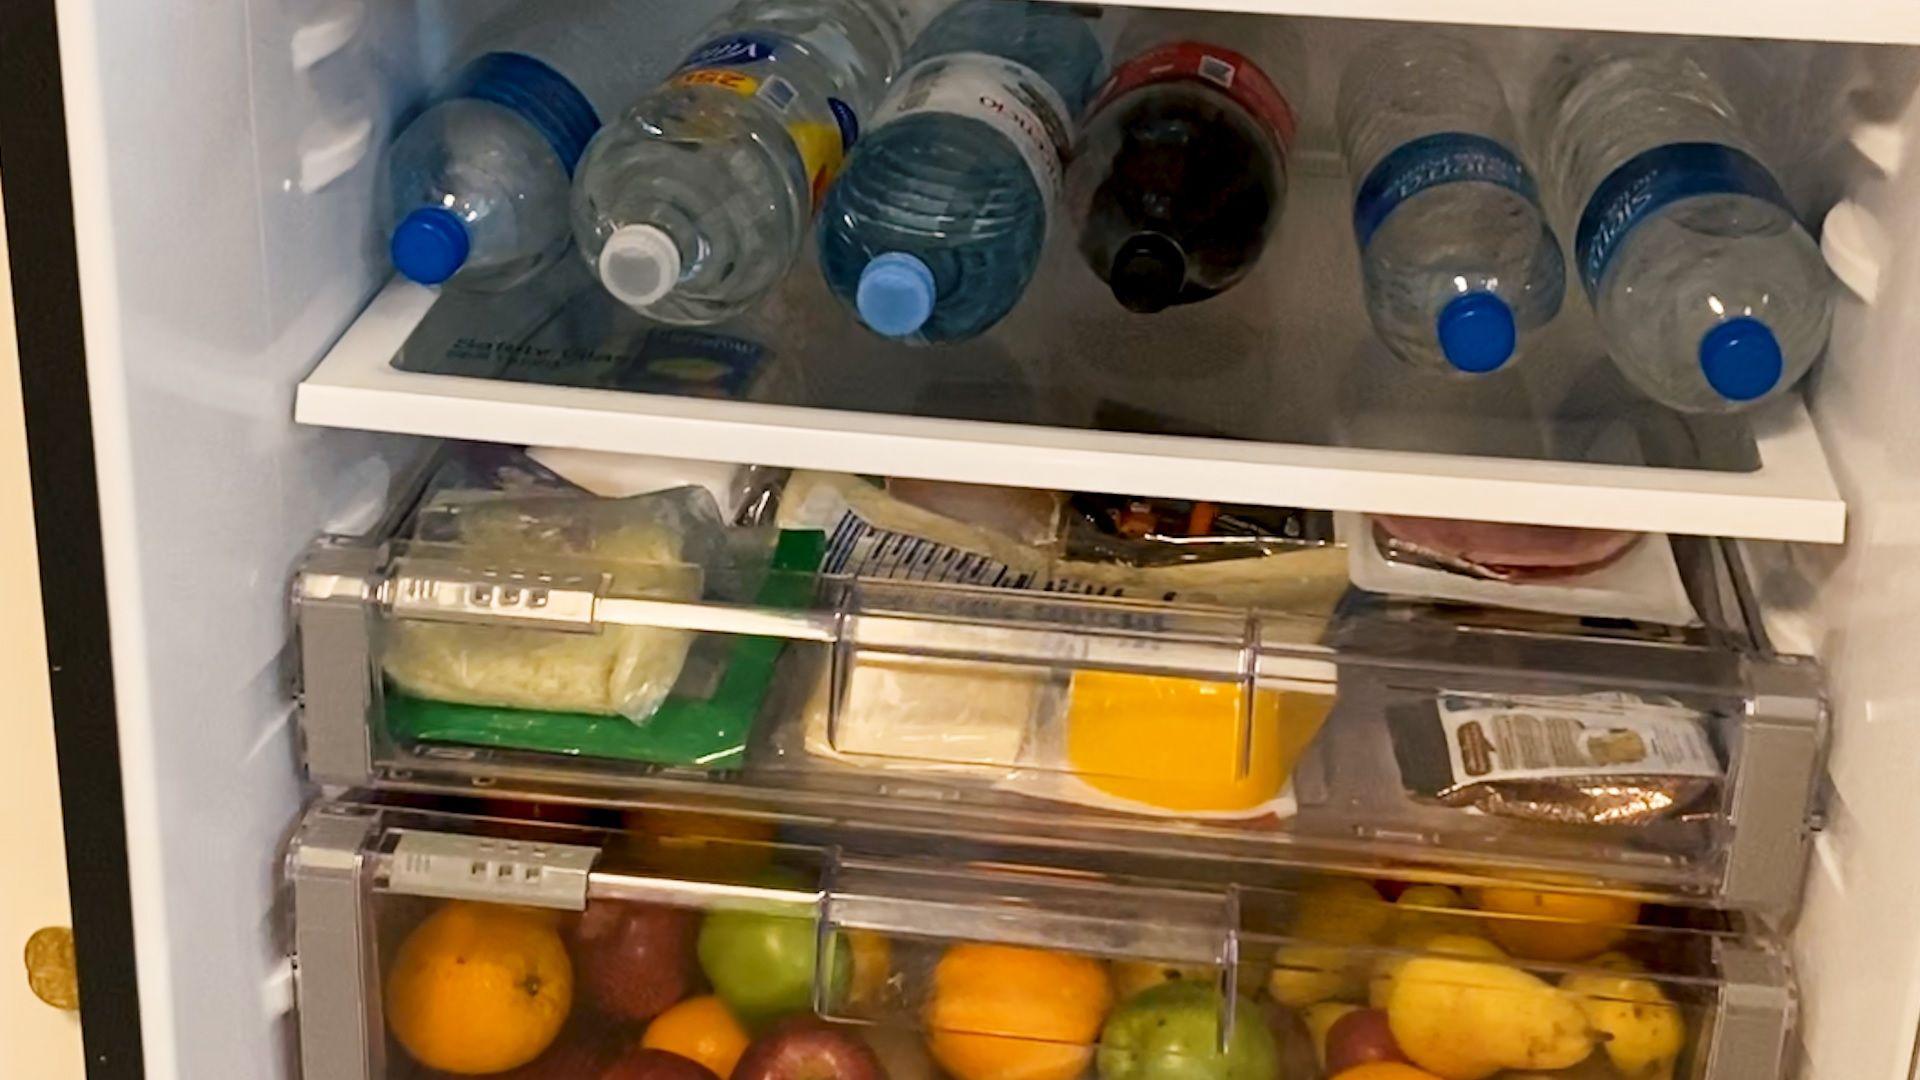 Coacutemo ubicar los alimentos en la heladera para no intoxicarse